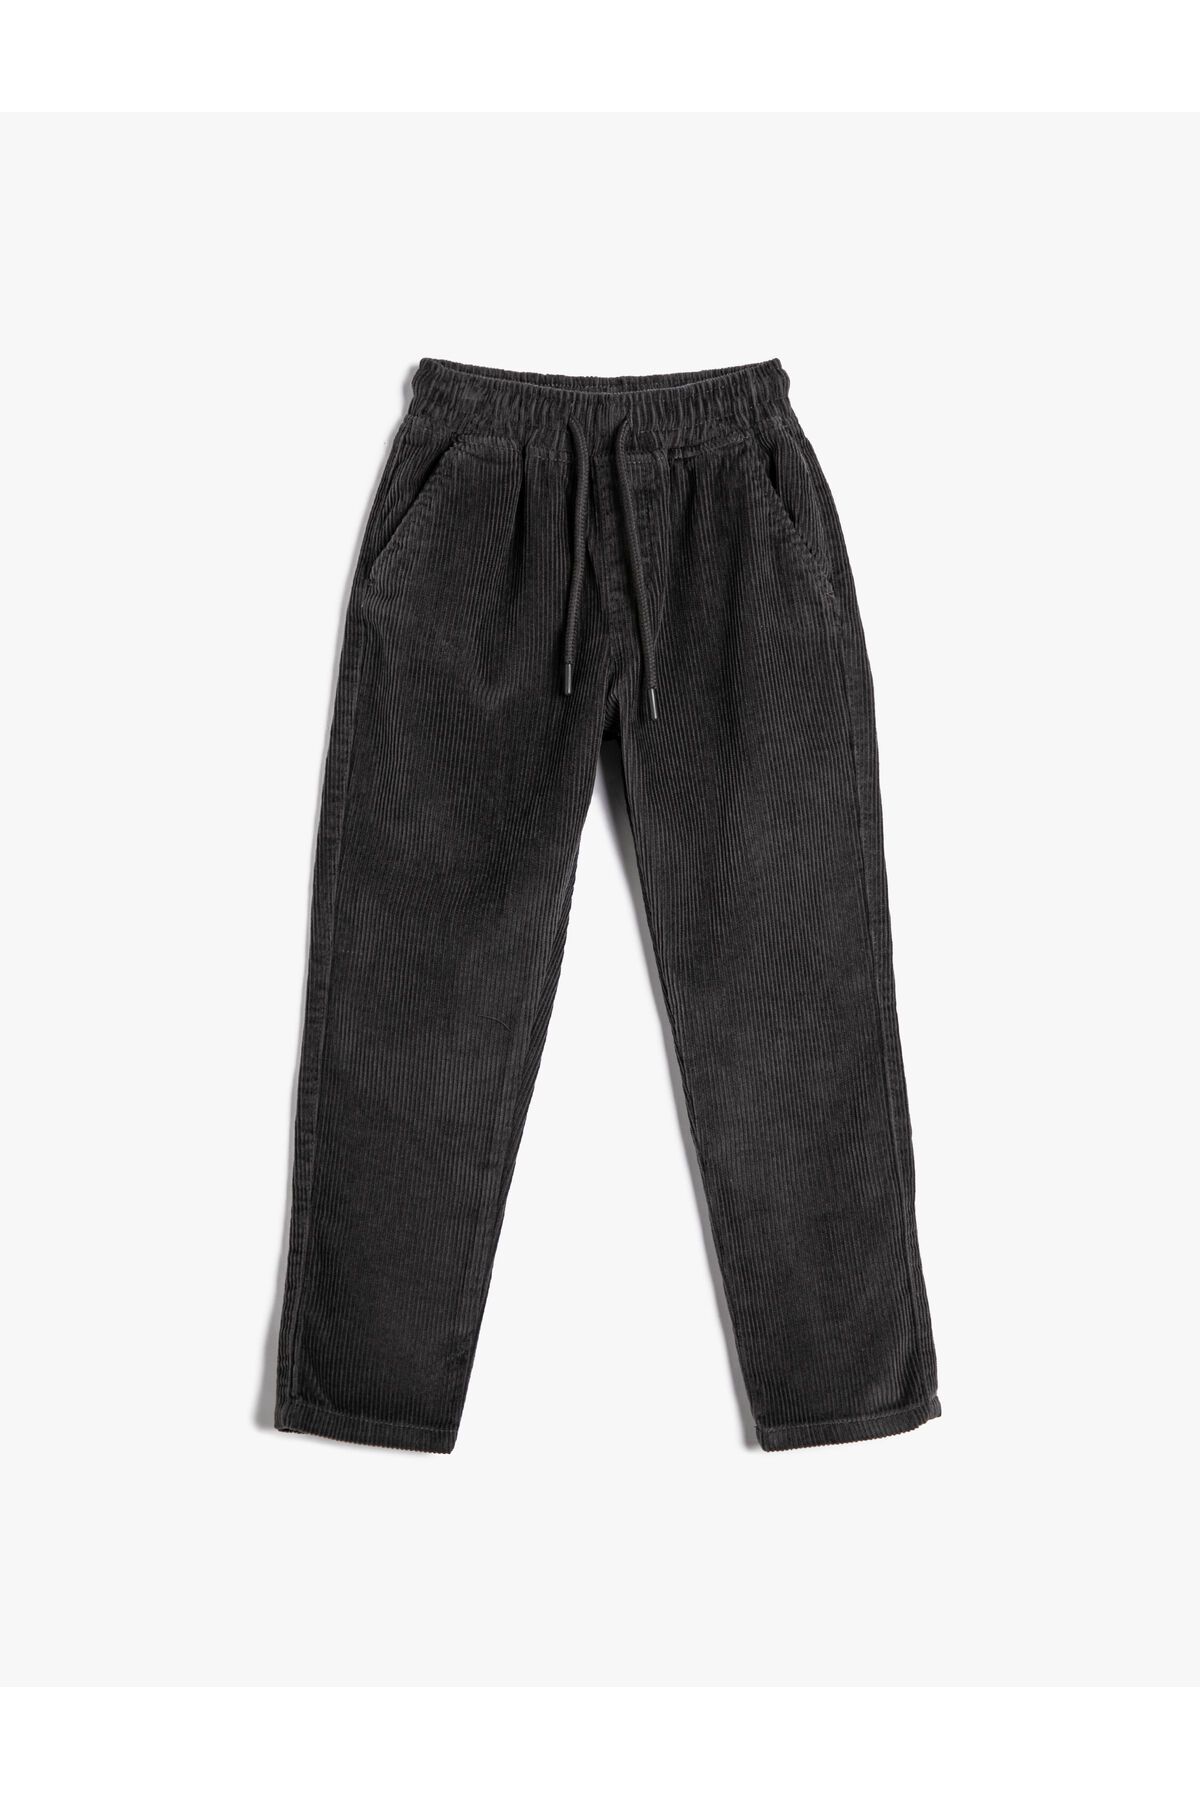 Koton Basic Pamuklu Pantolon Beli Bağlamalı Cep Detaylı